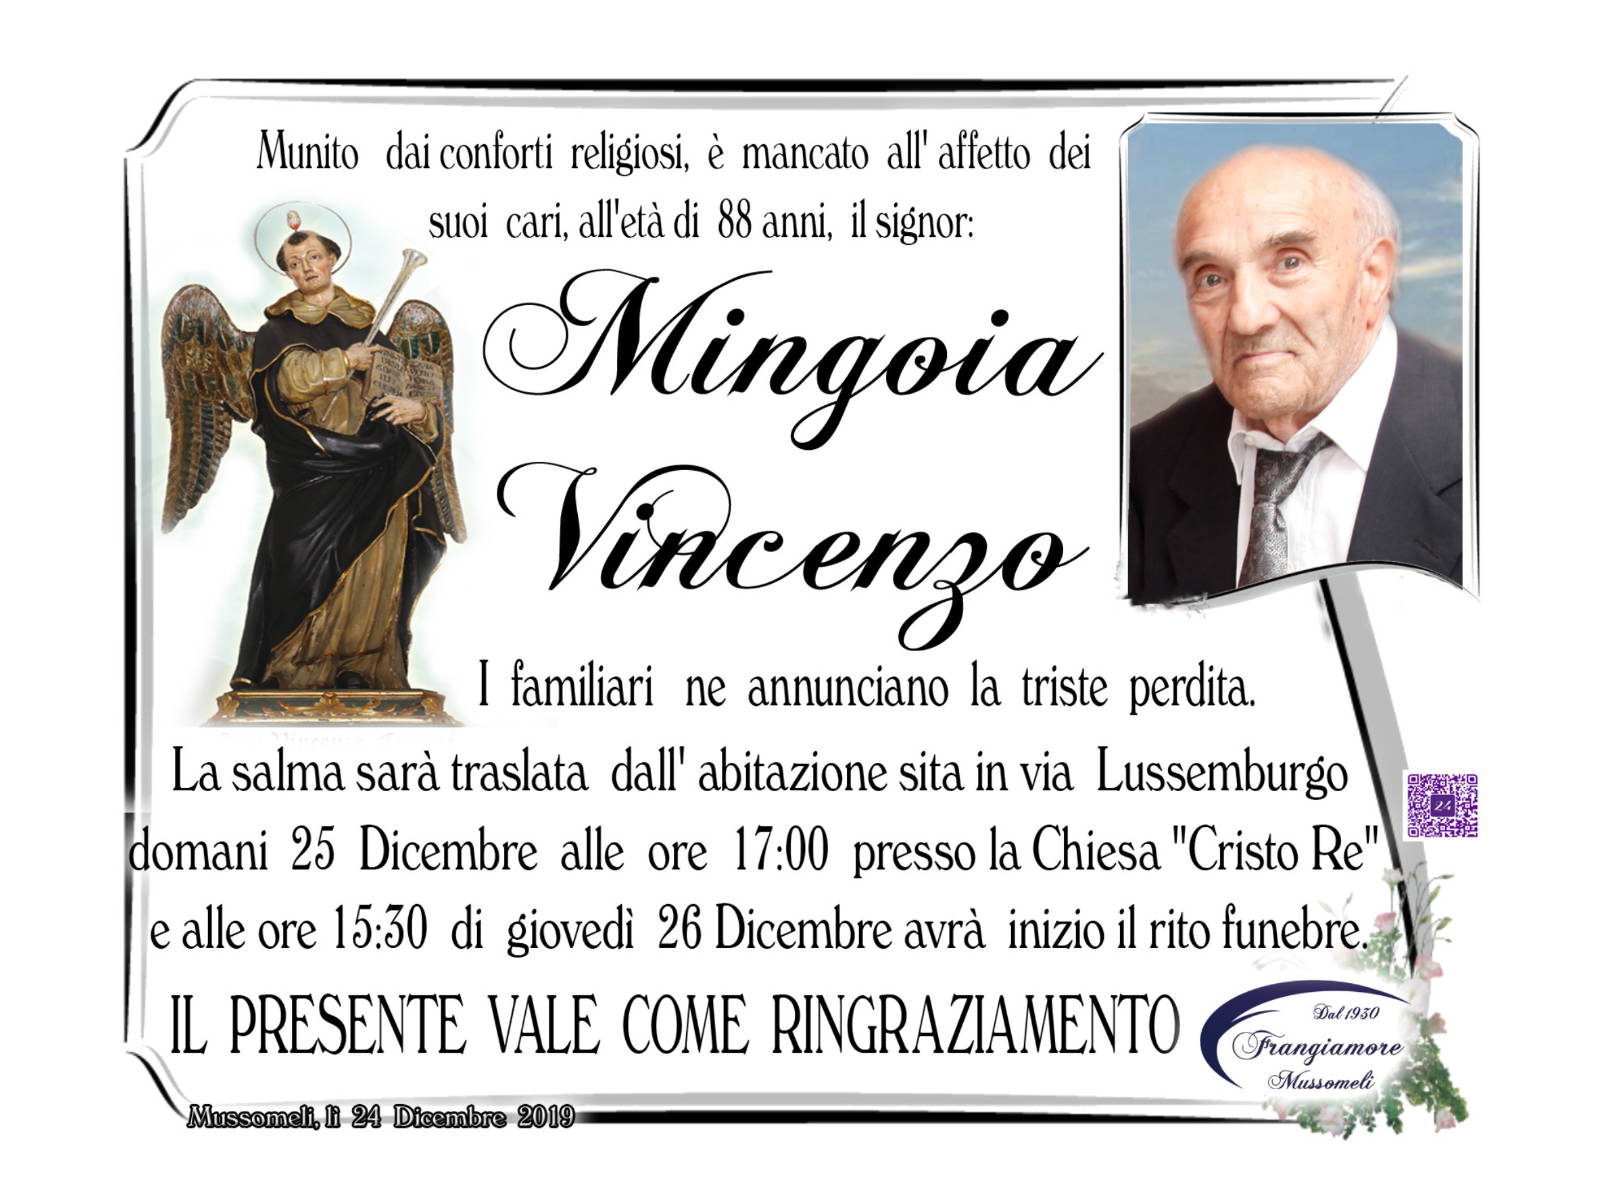 Vincenzo Mingoia